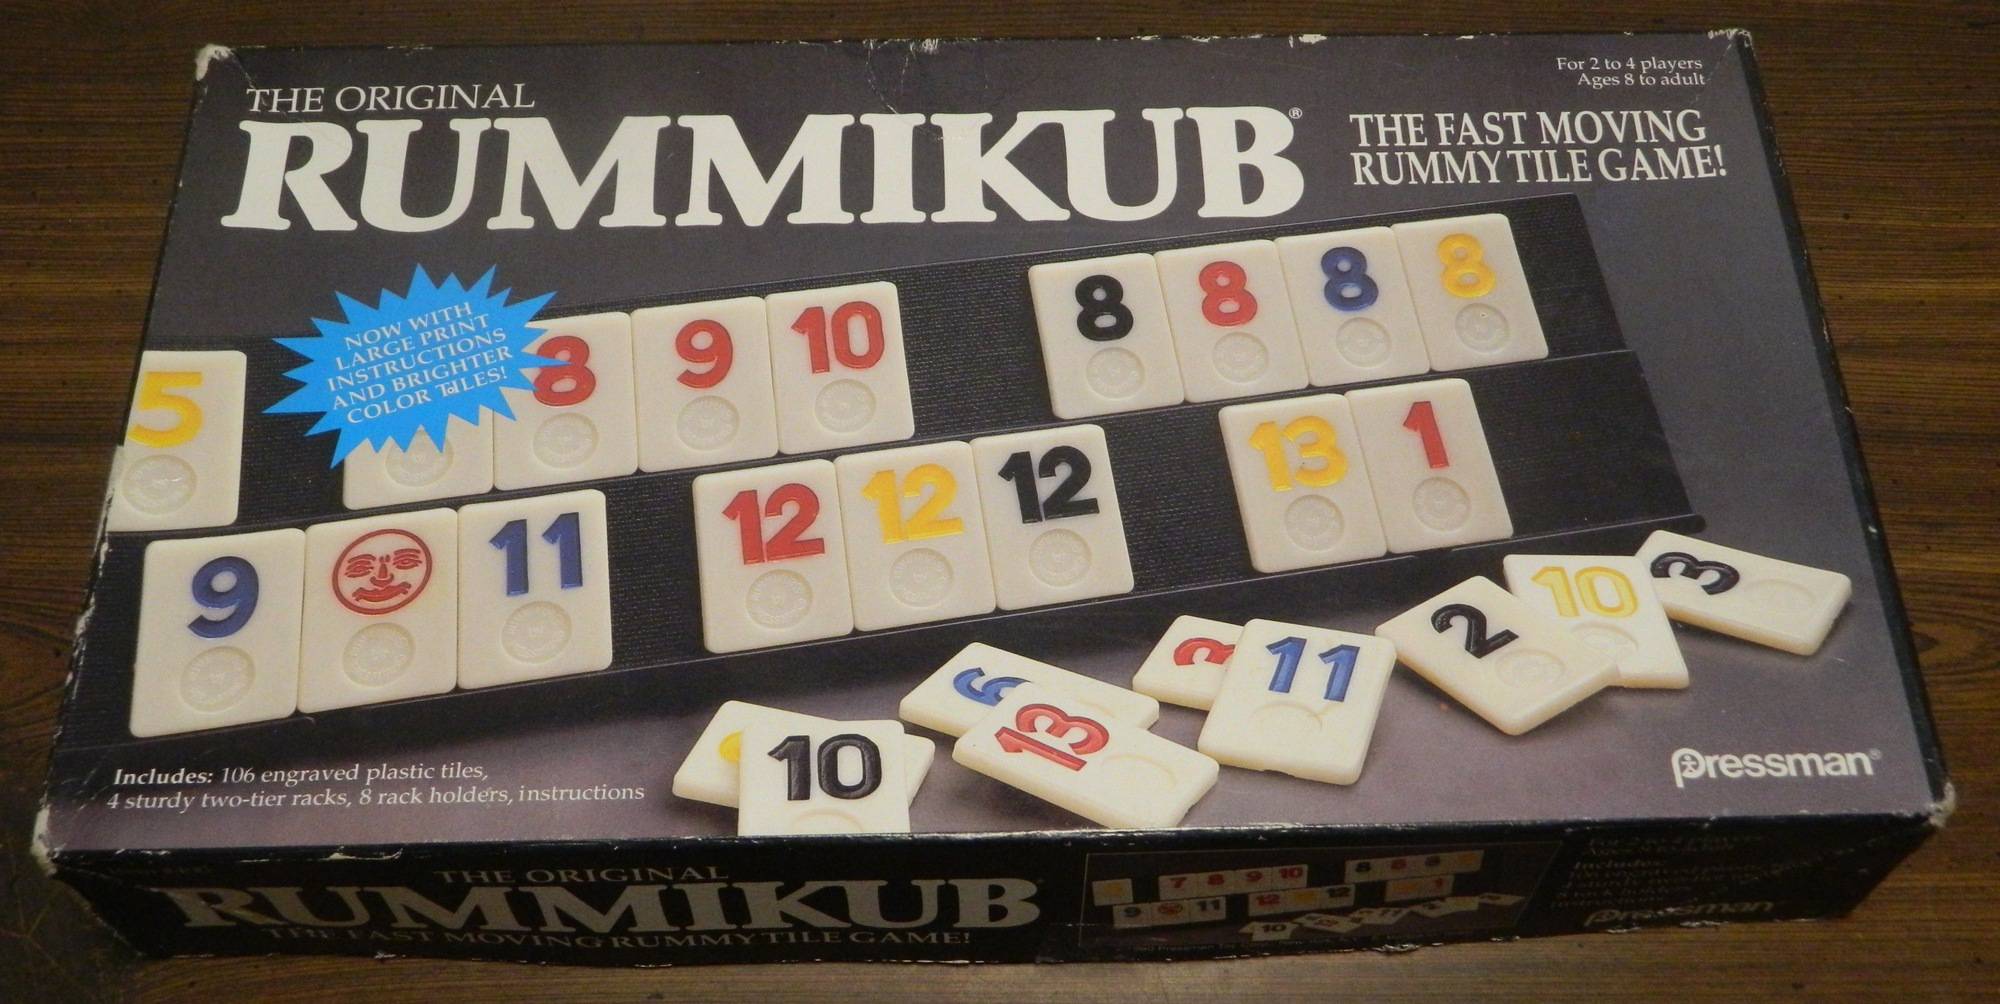 Box for Rummikub